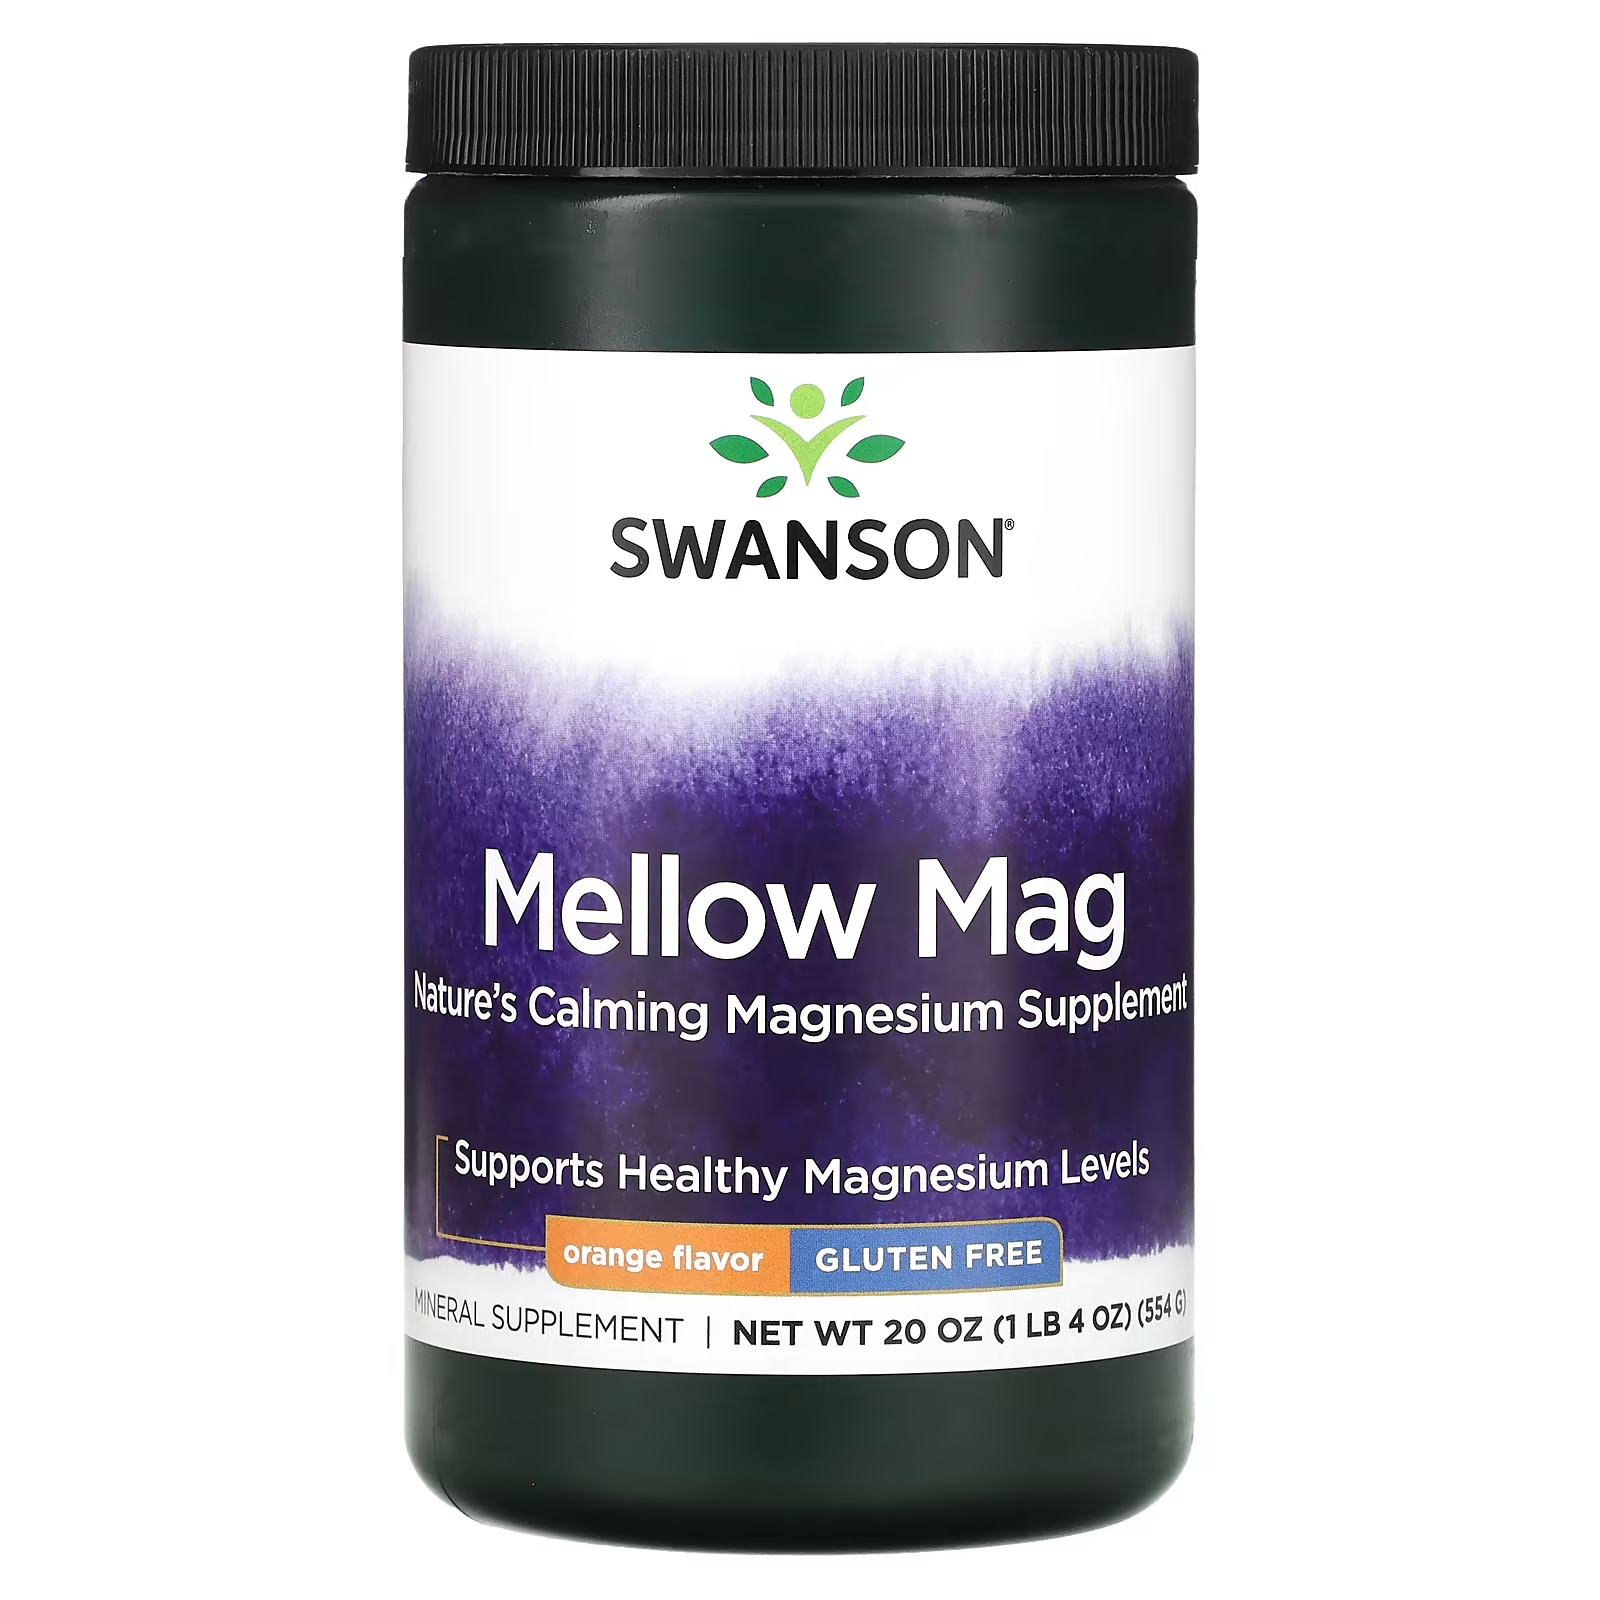 Пищевая добавка Swanson Mellow Mag со вкусом апельсина, 554 г добавка с минералами swanson mellow mag клубника киви 543 г